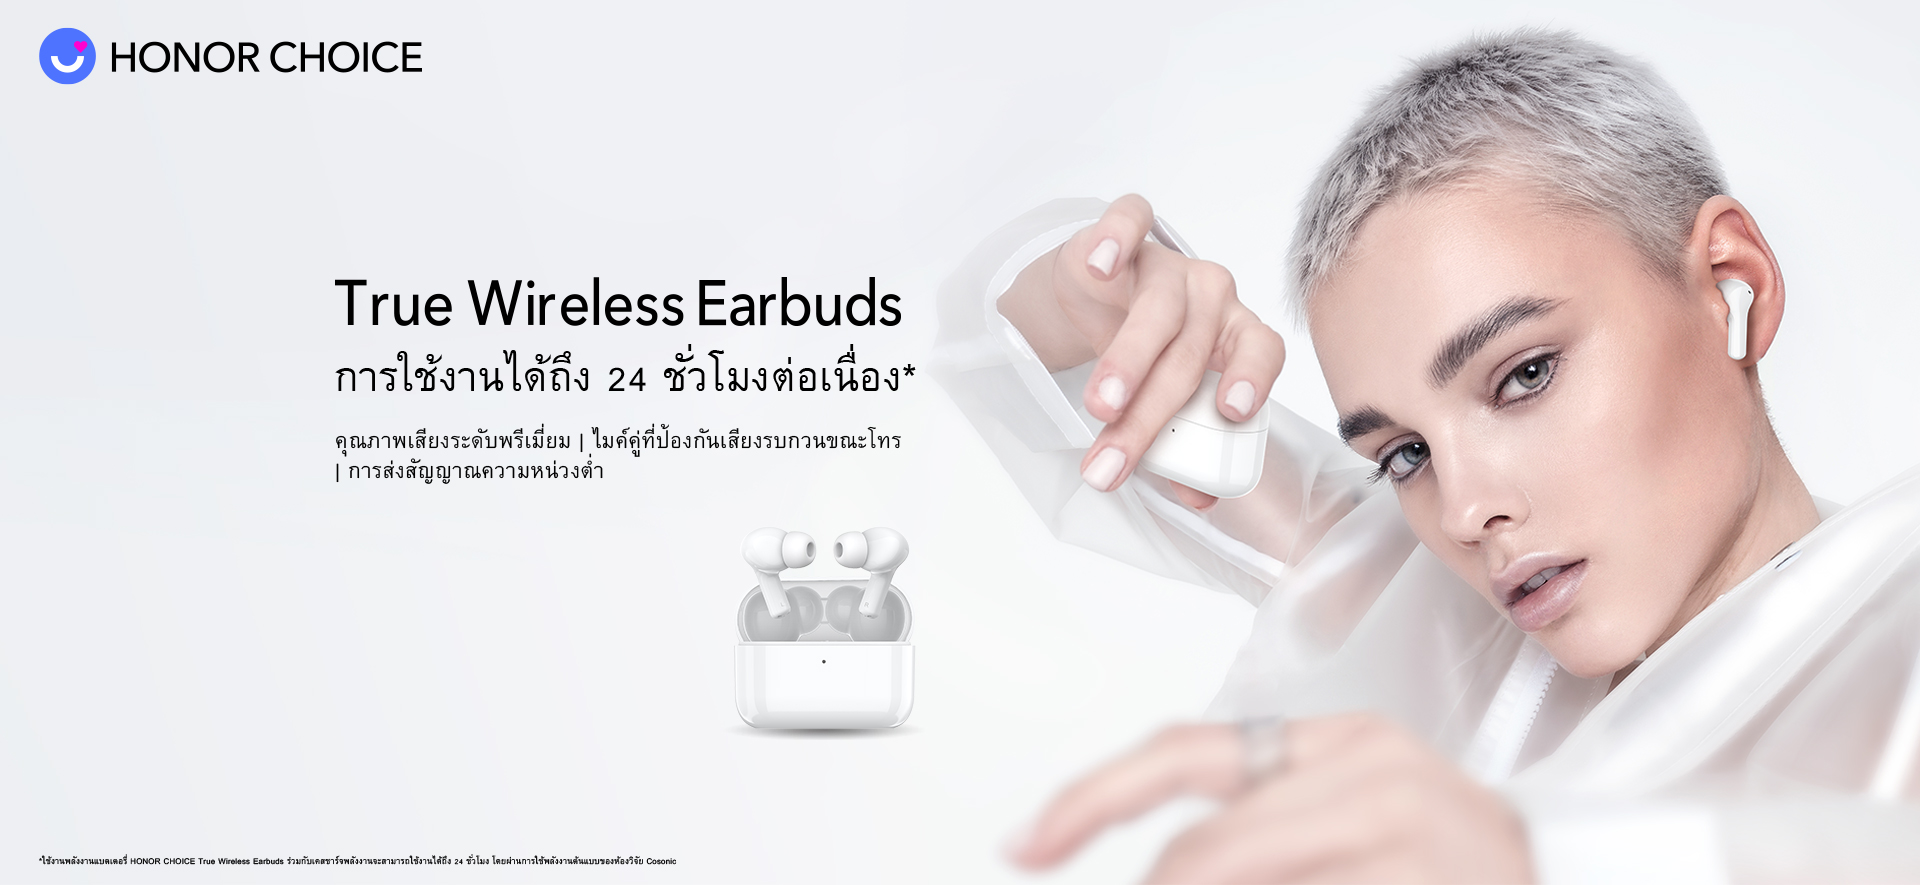 ออเนอร์ เปิดตัวหูฟังไร้สาย HONOR CHOICE True Wireless Earbuds ใช้ได้นานสูงสุด 24 ชั่วโมง